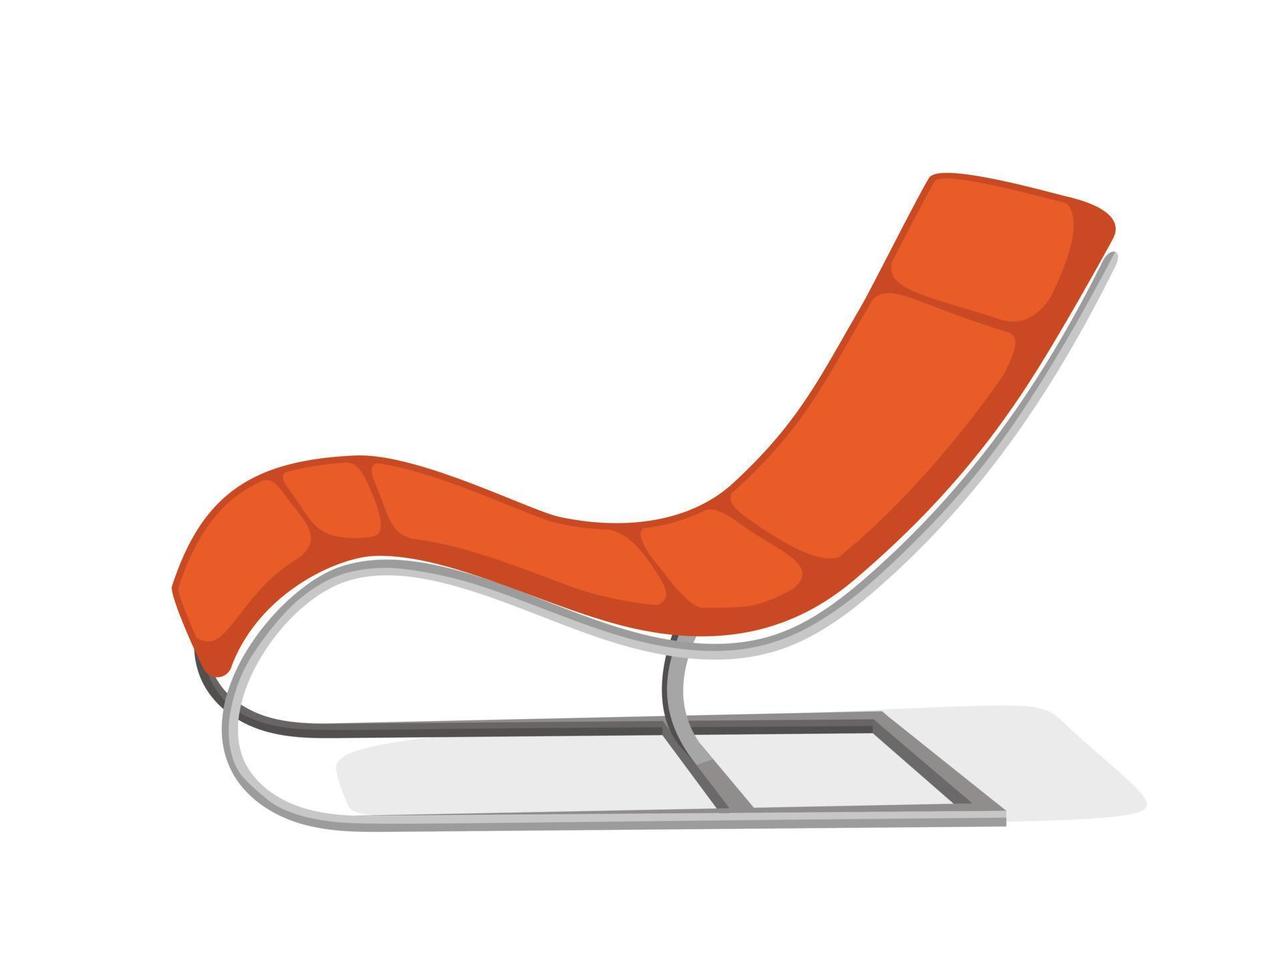 poltrona sofá laranja moderno mobiliário interior ilustração vetorial em um estilo simples isolado vetor